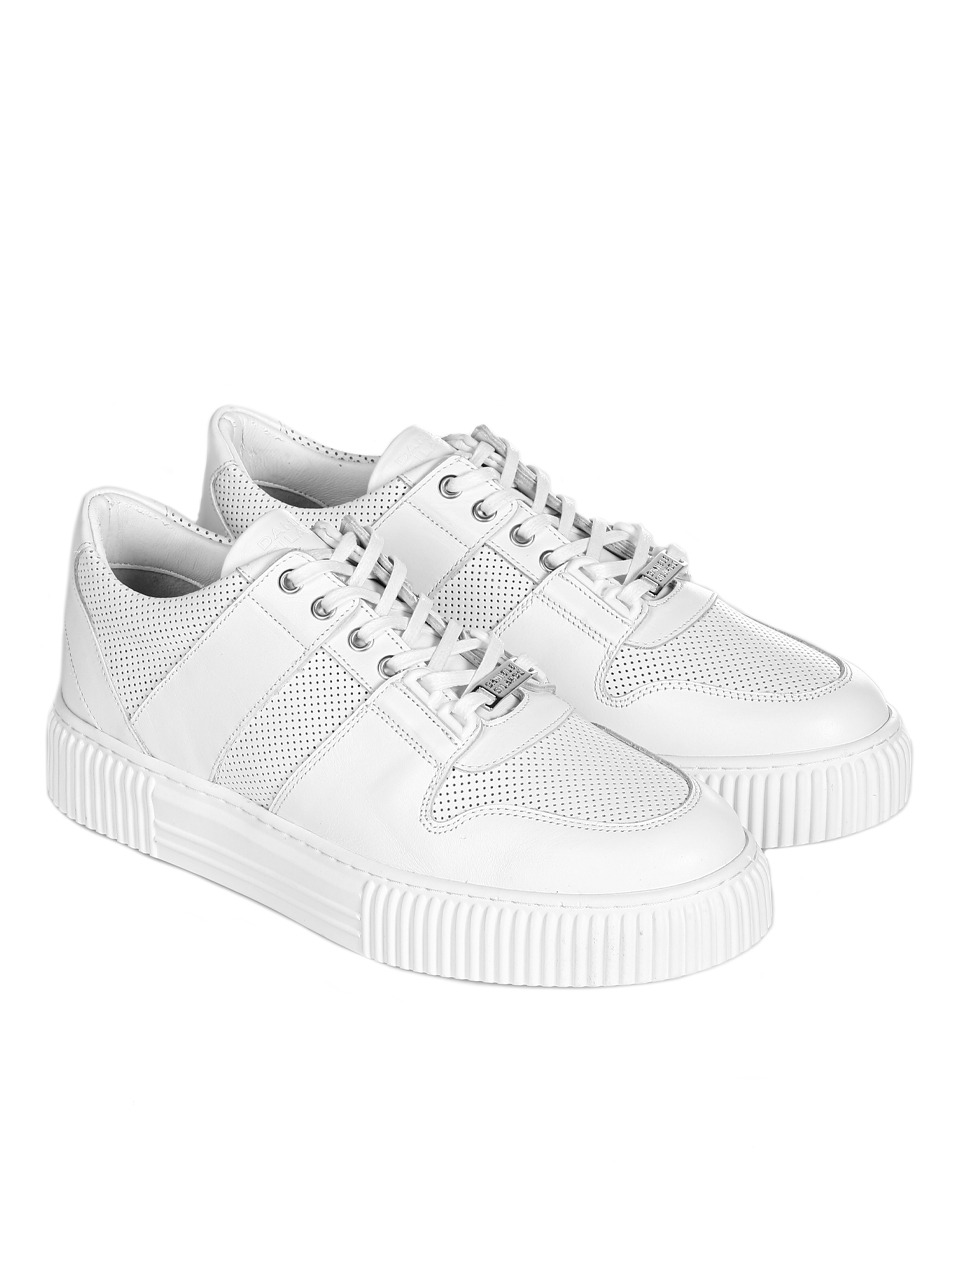 Ежедневни мъжки обувки от естествена кожа в бяло 7AT-24371 white